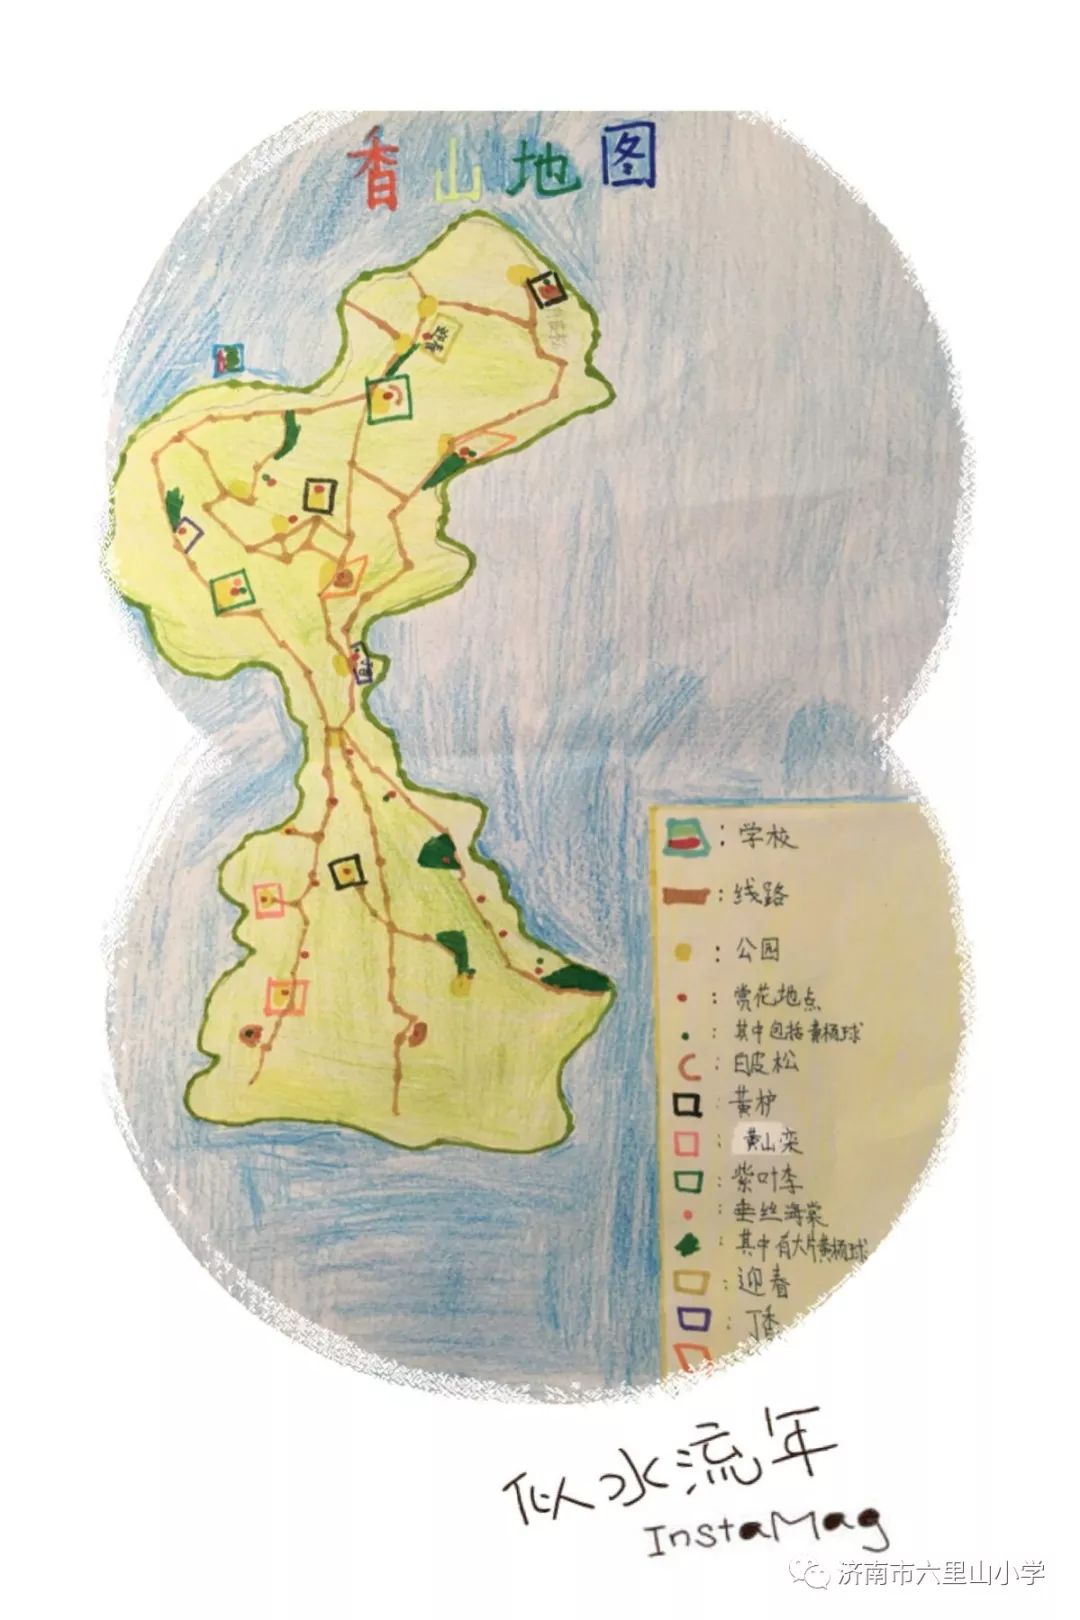 这是我们绘制的 香山赏花地图,欢迎大家到小香山上来赏花.图片